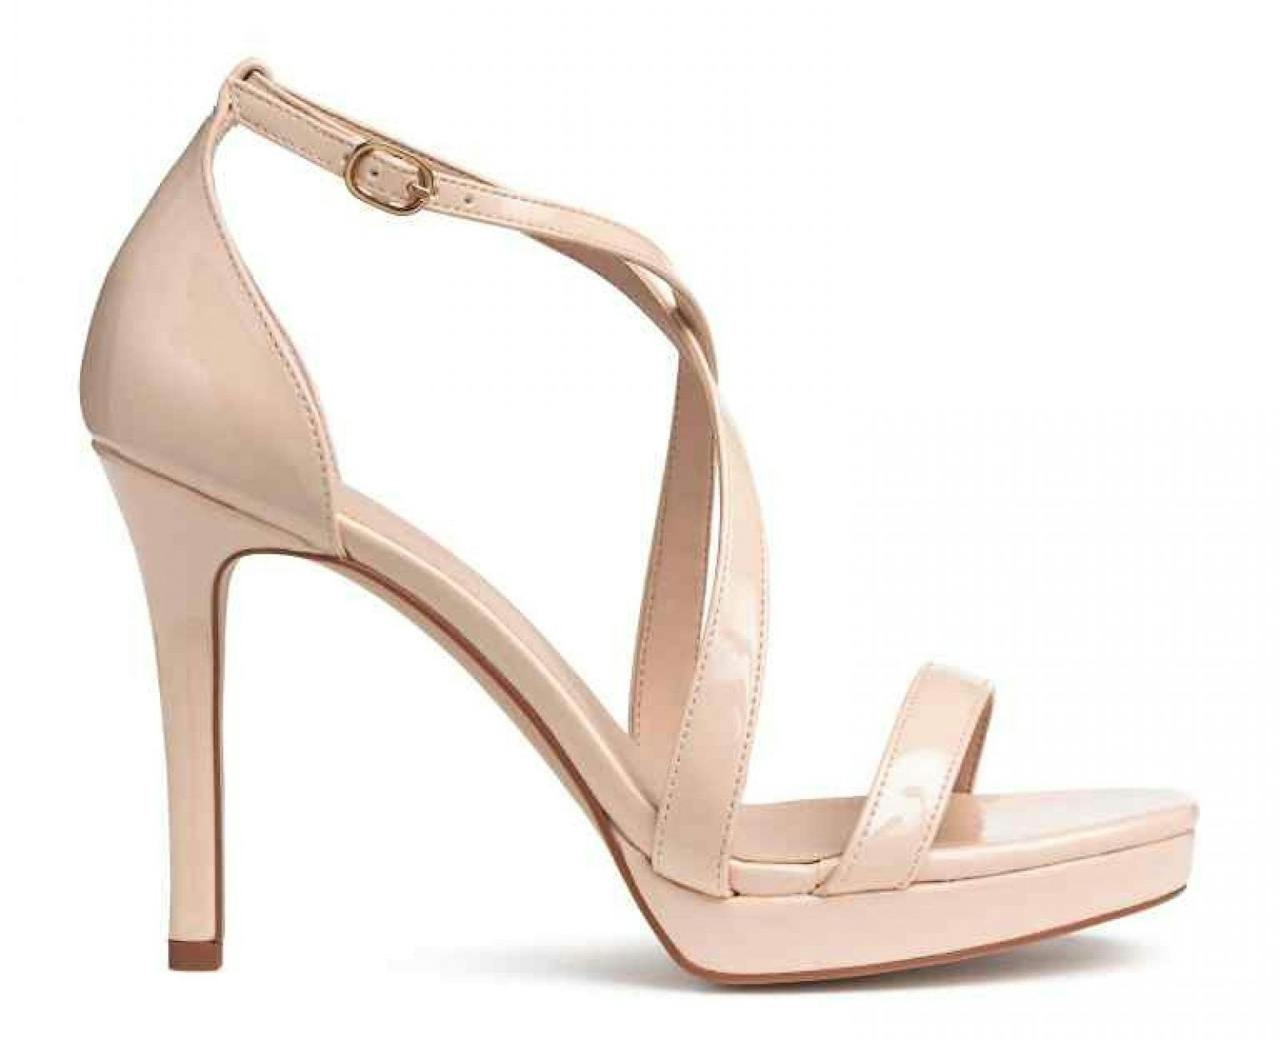 Las sandalias 'nude' de tiras cruzadas de H&M, por 29,99 euros